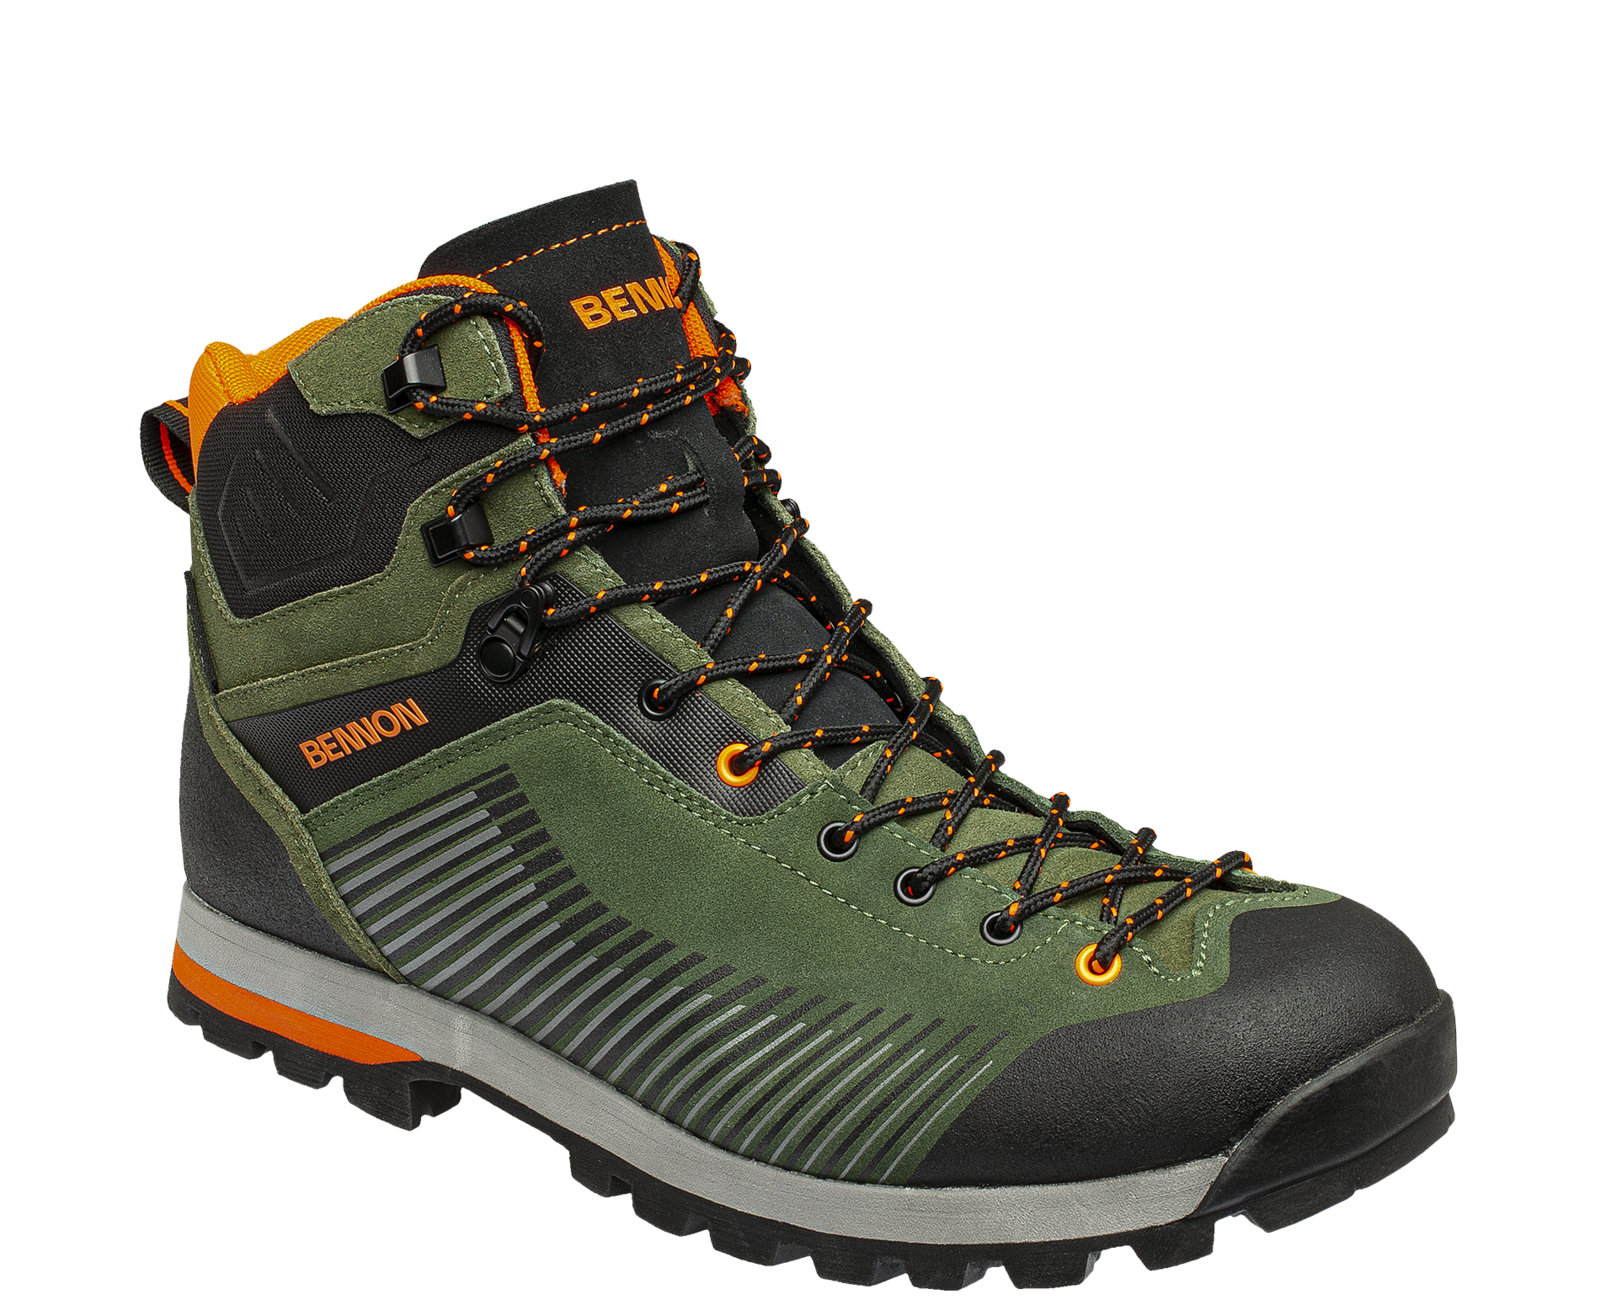 Kožená členková obuv s membránou Bennon Peak Green High - veľkosť: 37, farba: khaki/oranžová